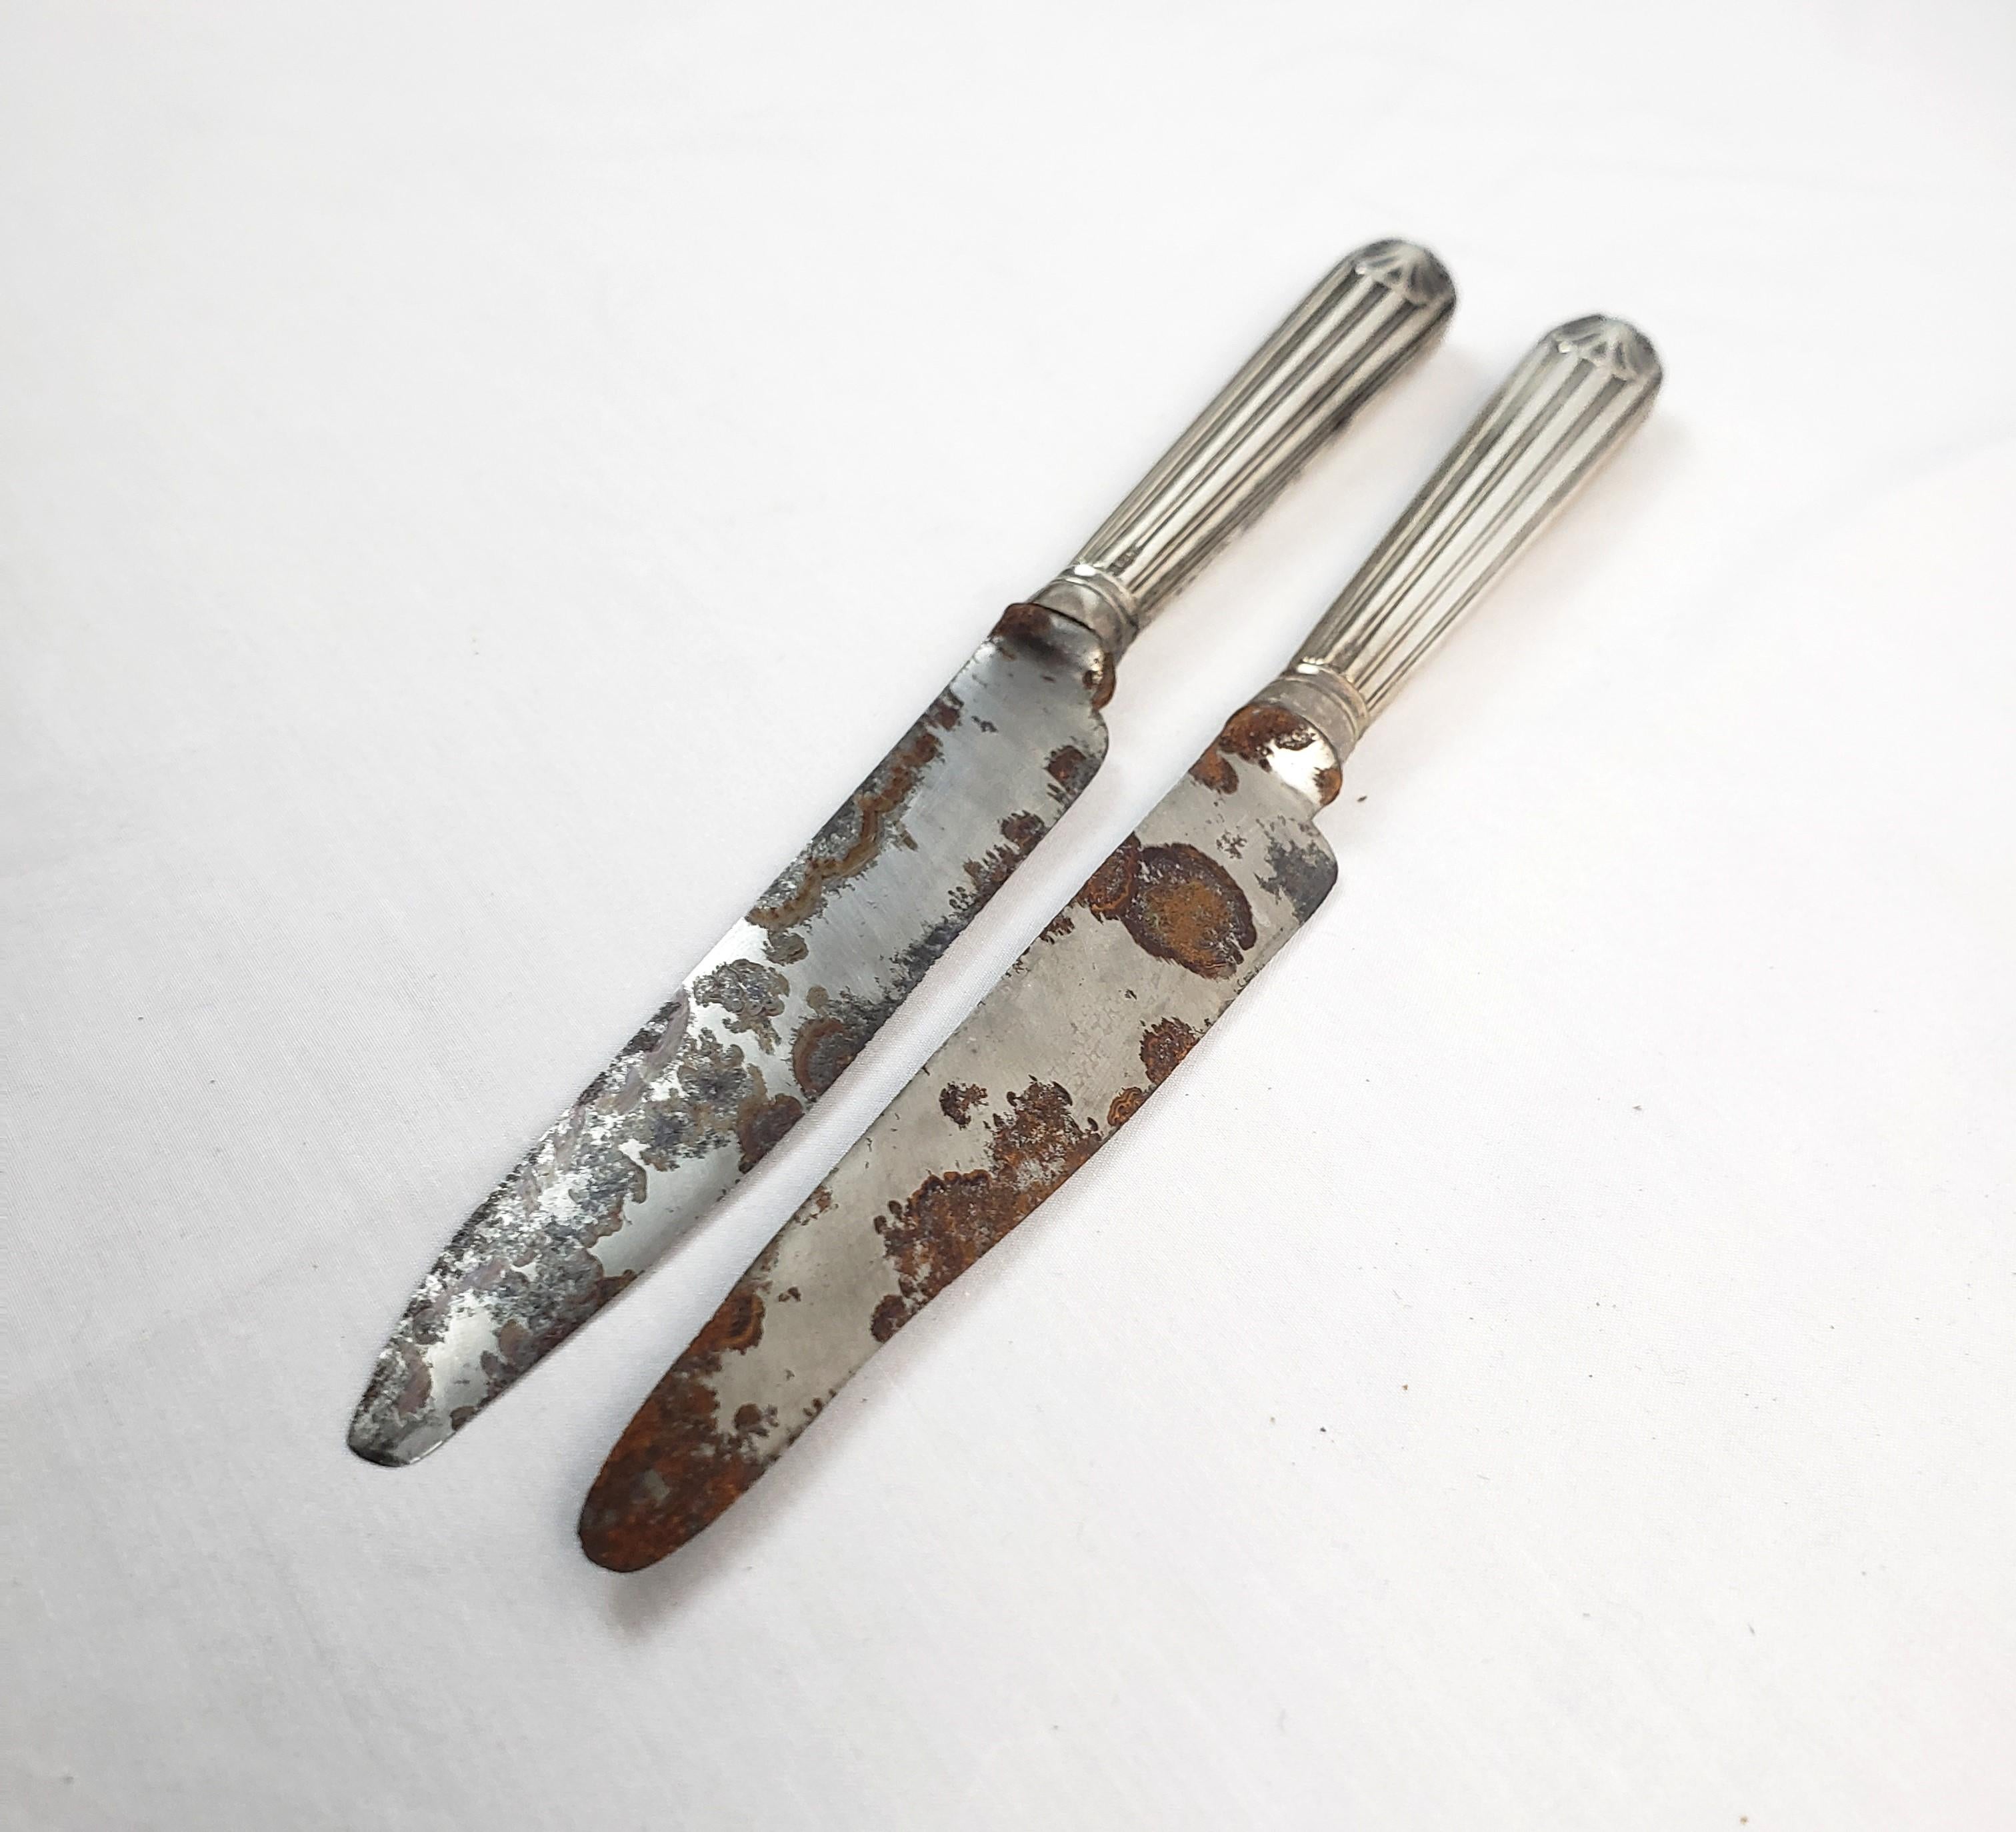 Cette paire de couteaux anciens a été fabriquée par le célèbre orfèvre anglais Paul Storr. Elle date d'environ 1807 et a été réalisée dans le style géorgien de l'époque. Les poignées sont en argent sterling avec des côtés nervurés et des détails